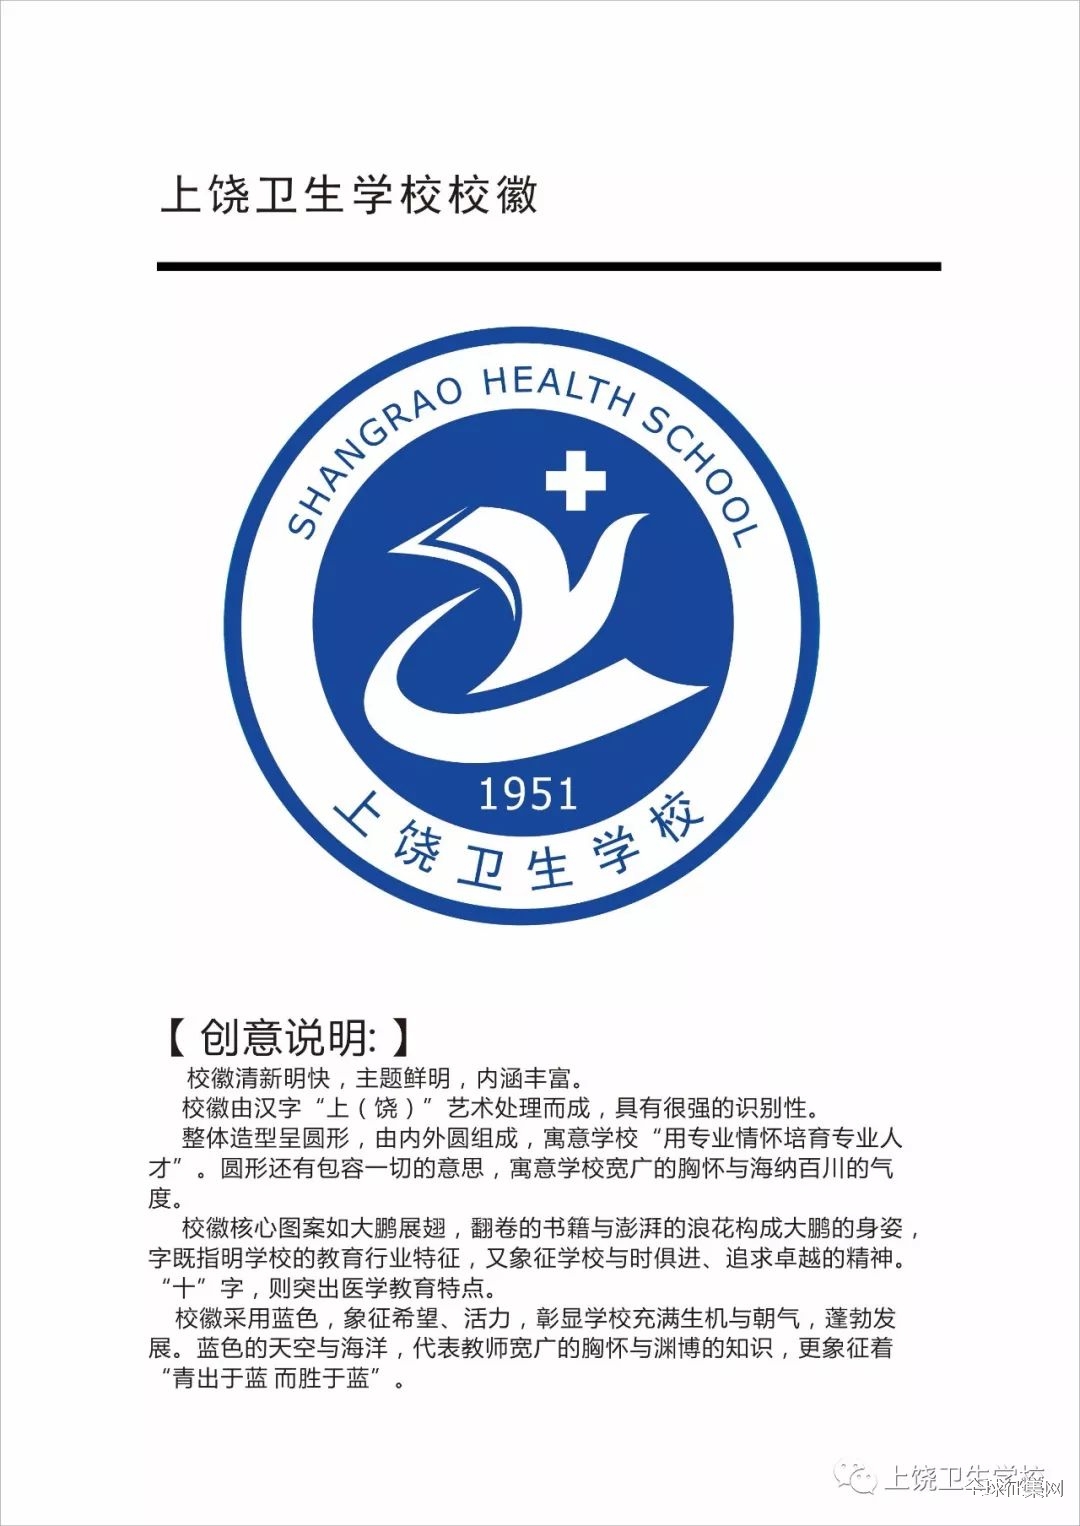 中国征集网 - 征集网-全球征集网官方-征集网-设计网-标识logo